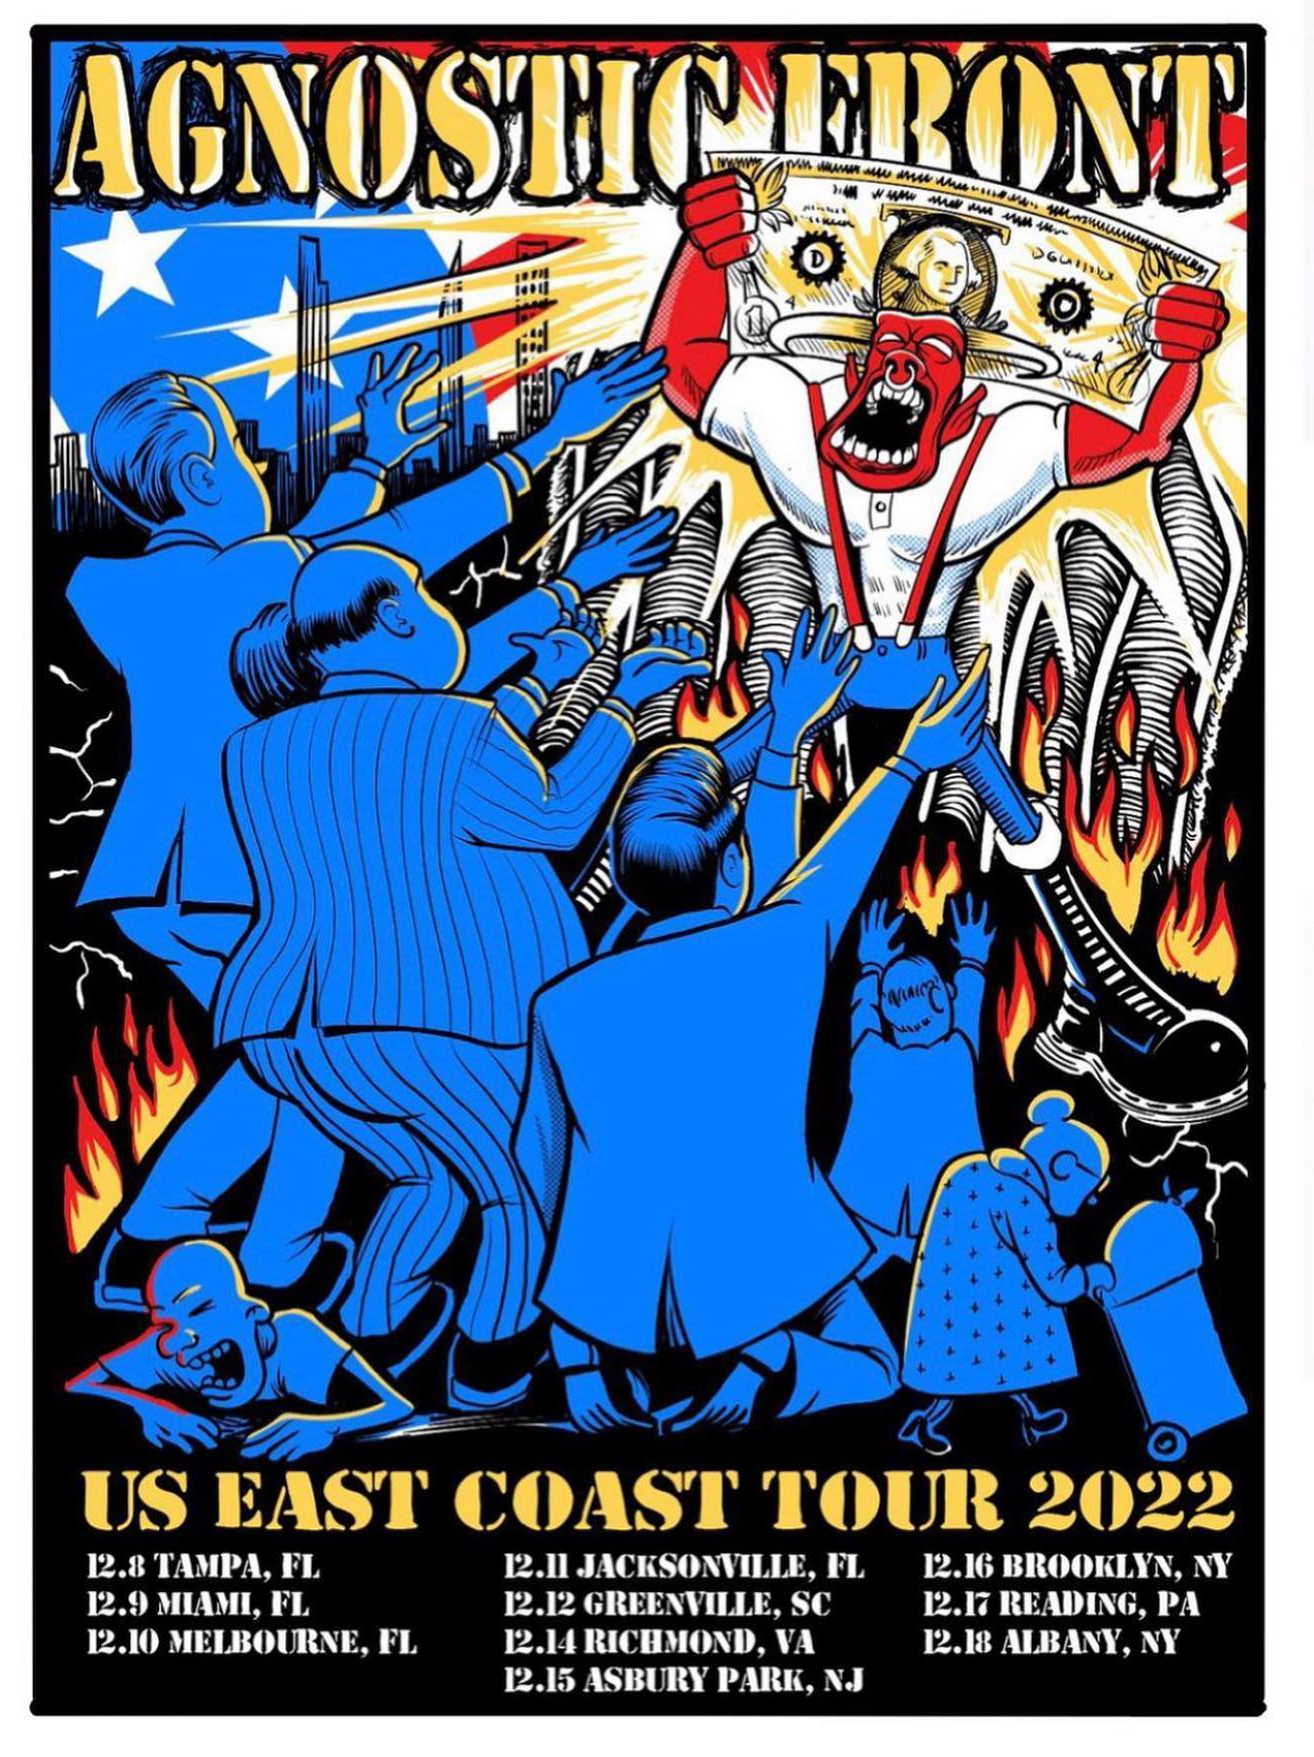 agnostic front tour dates 2022